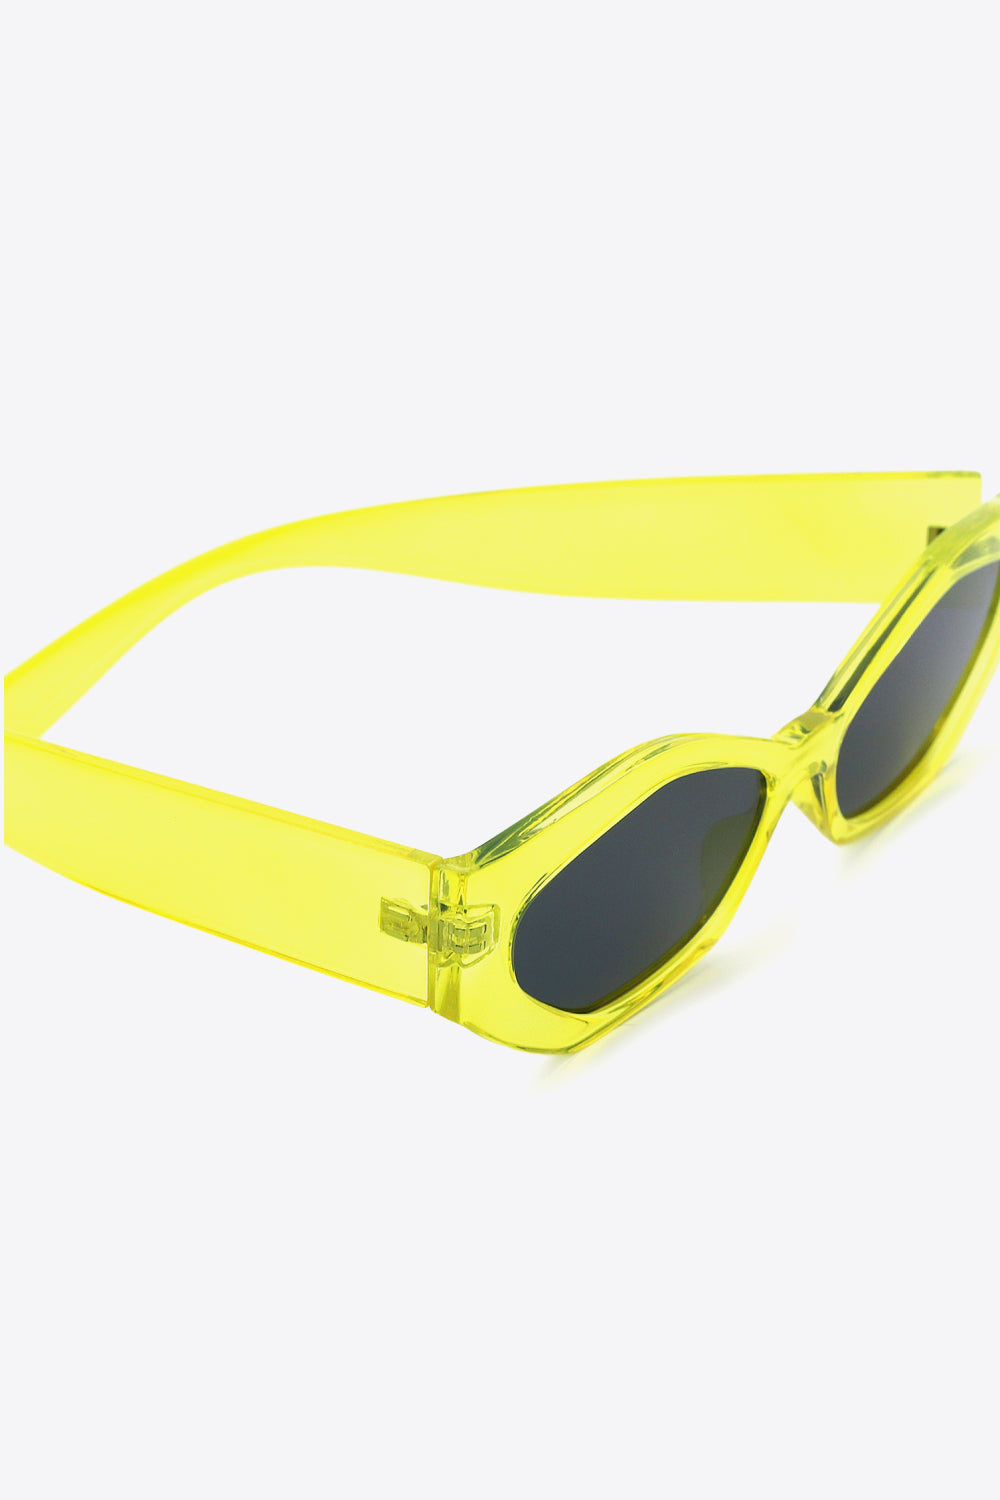 Polycarbonate Frame Wayfarer Sunglasses One Size Sunglasses by Vim&Vigor | Vim&Vigor Boutique